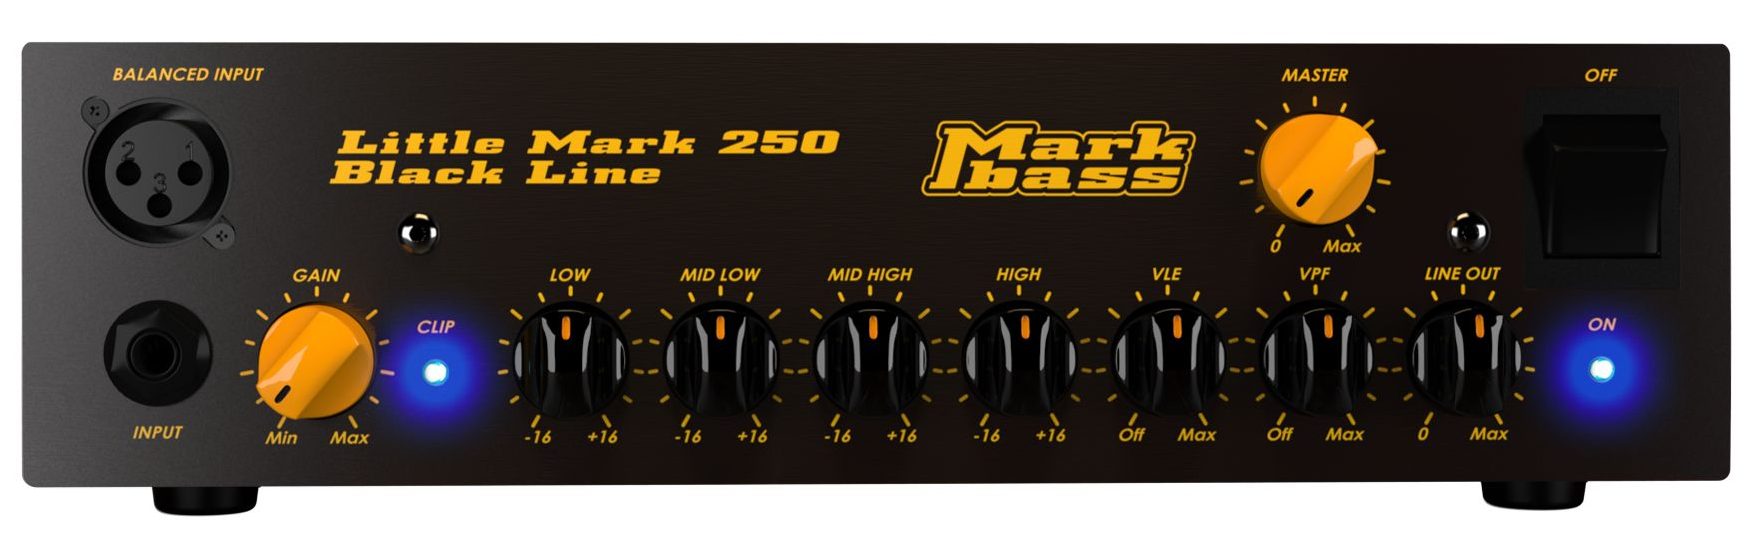 Little Mark 250/Black Line MAK-LM250/BKパネル画像